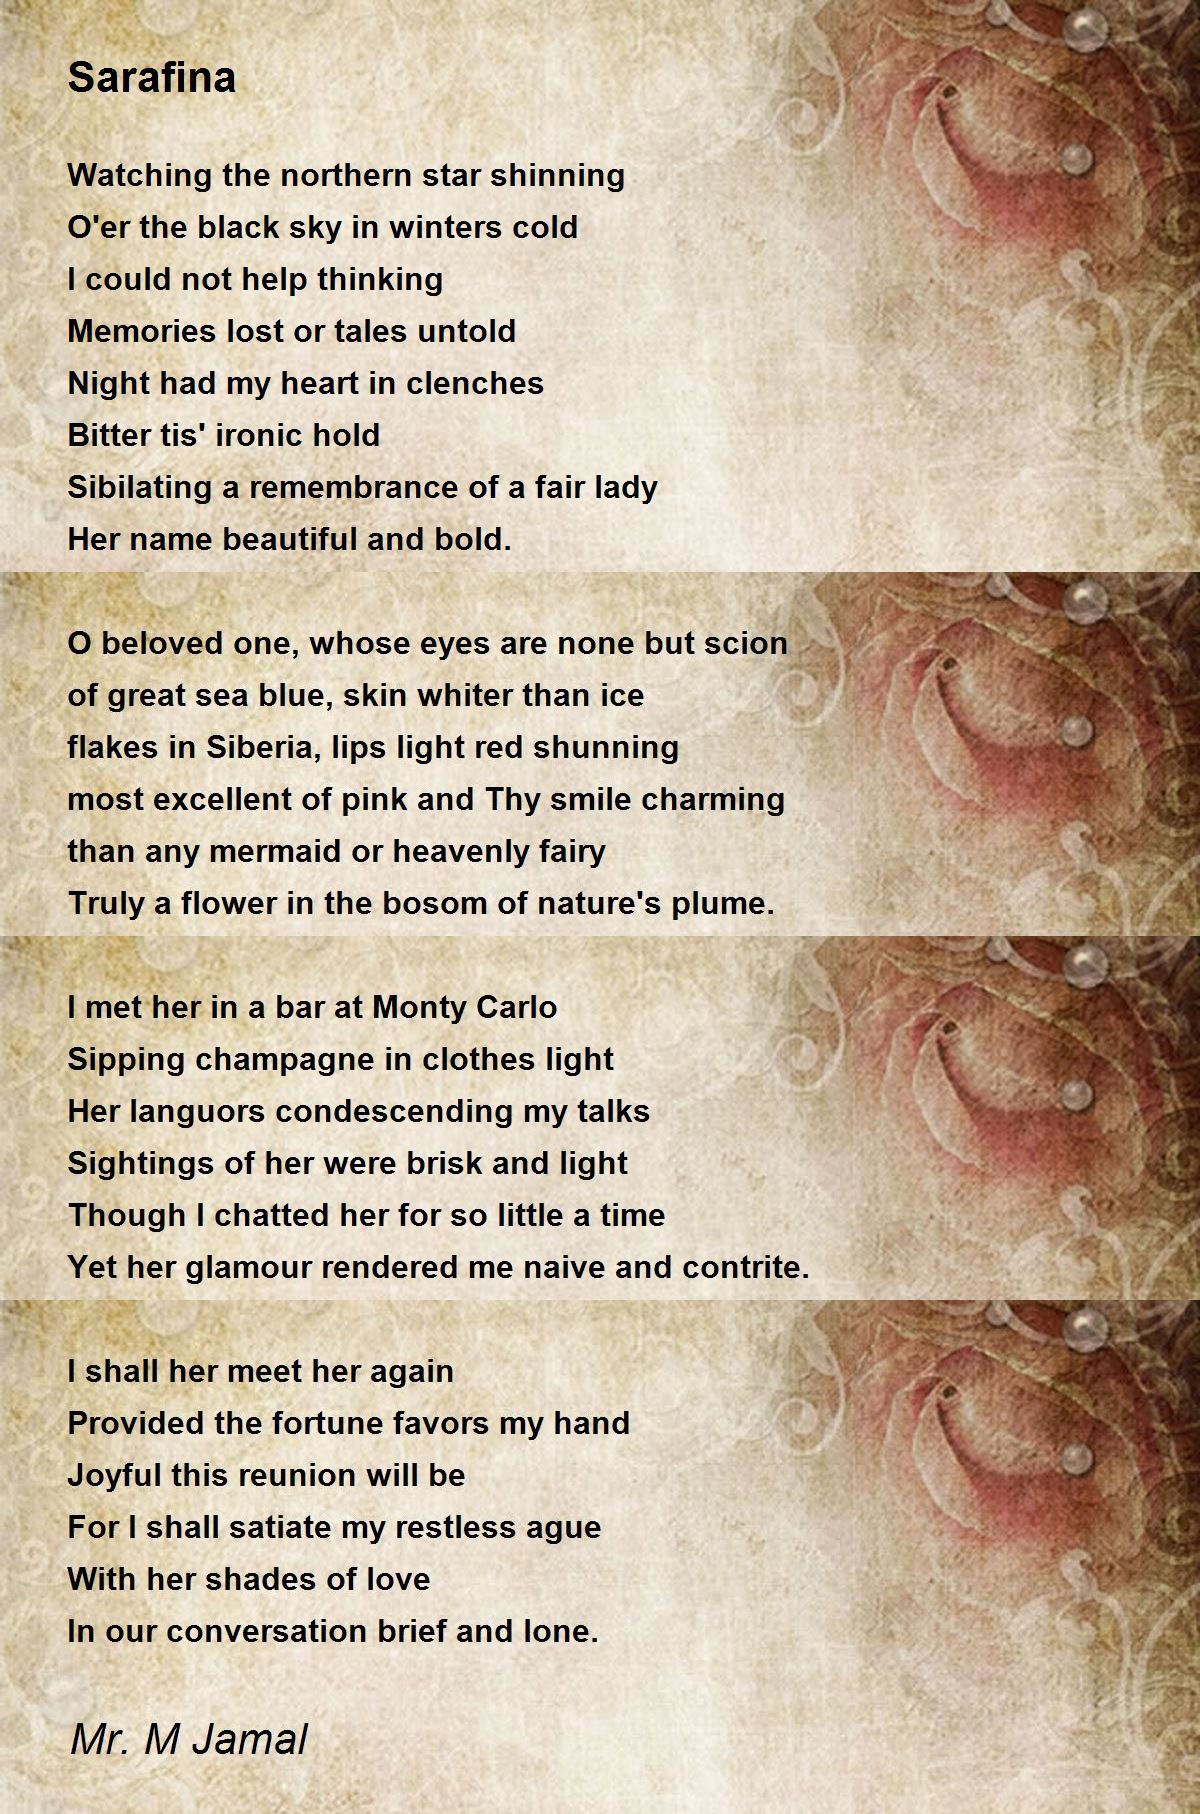 Sarafina Poem by Mr. M Jamal - Poem Hunter